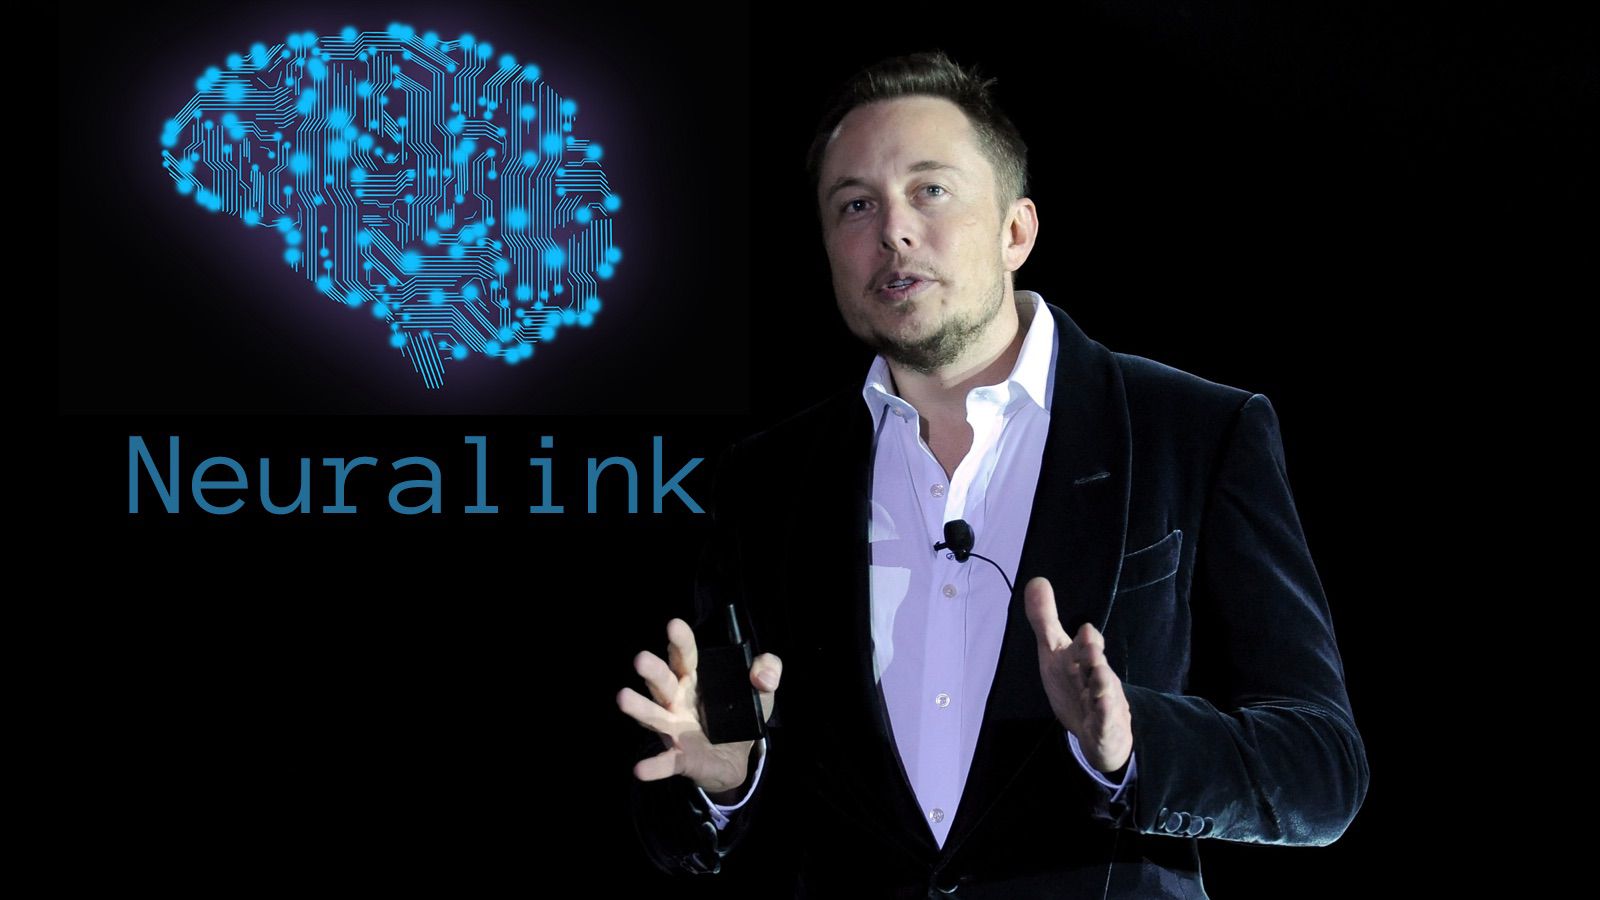 Neuralink de Musk obtiene el visto bueno de la FDA para colocar implantes en el cerebro humano |  Tendencias digitales